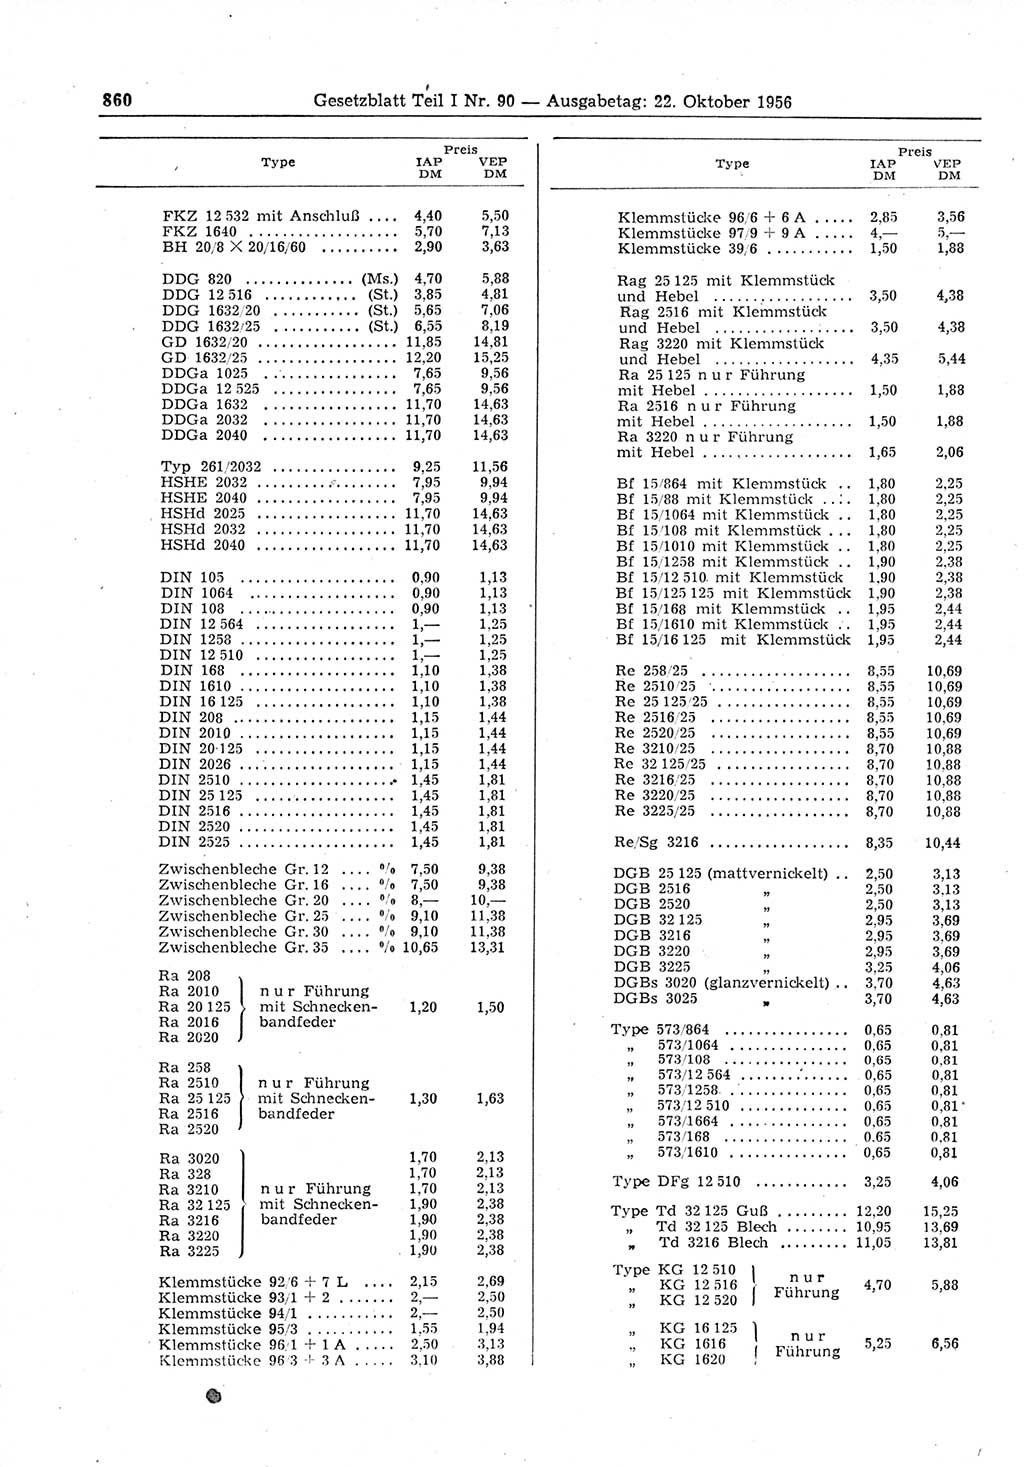 Gesetzblatt (GBl.) der Deutschen Demokratischen Republik (DDR) Teil Ⅰ 1956, Seite 860 (GBl. DDR Ⅰ 1956, S. 860)